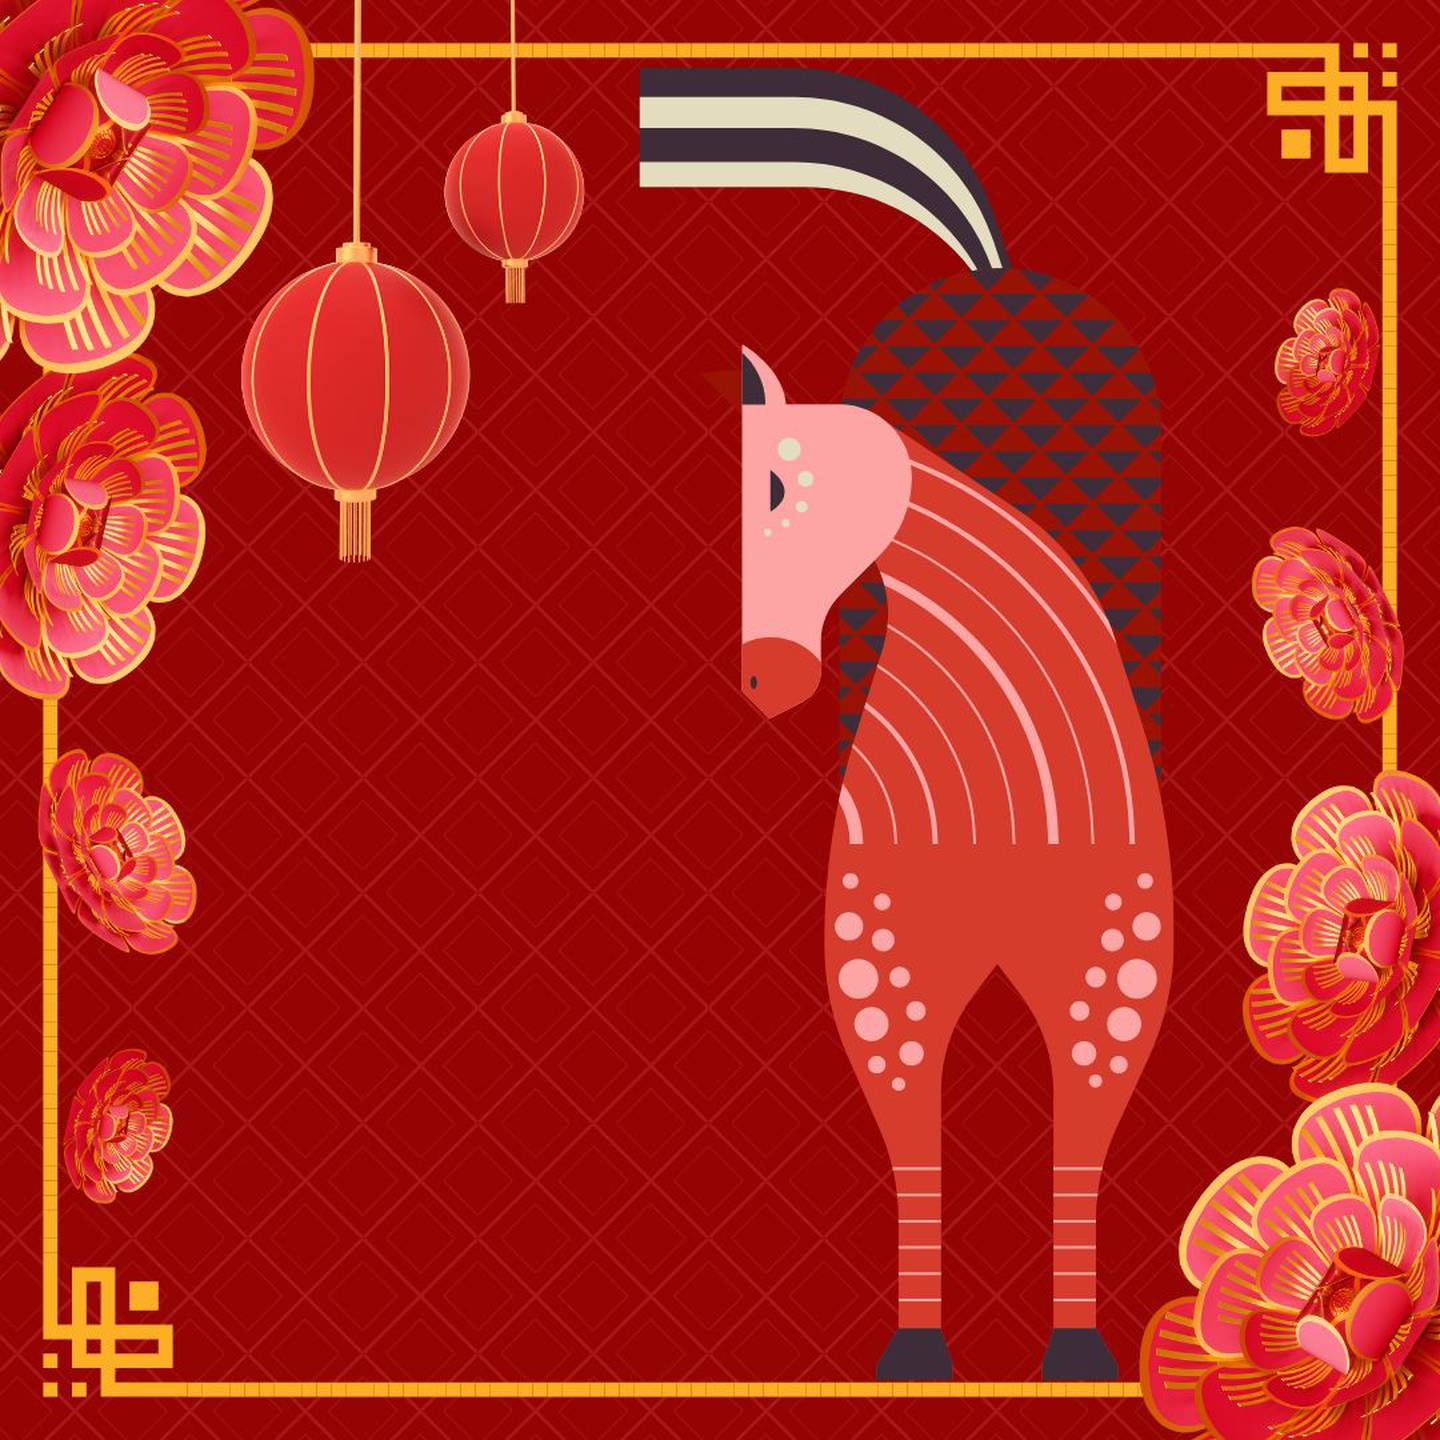 Imagen de la caricatura de un caballo sobre un fondo rojo, decorado con motivos orientales.